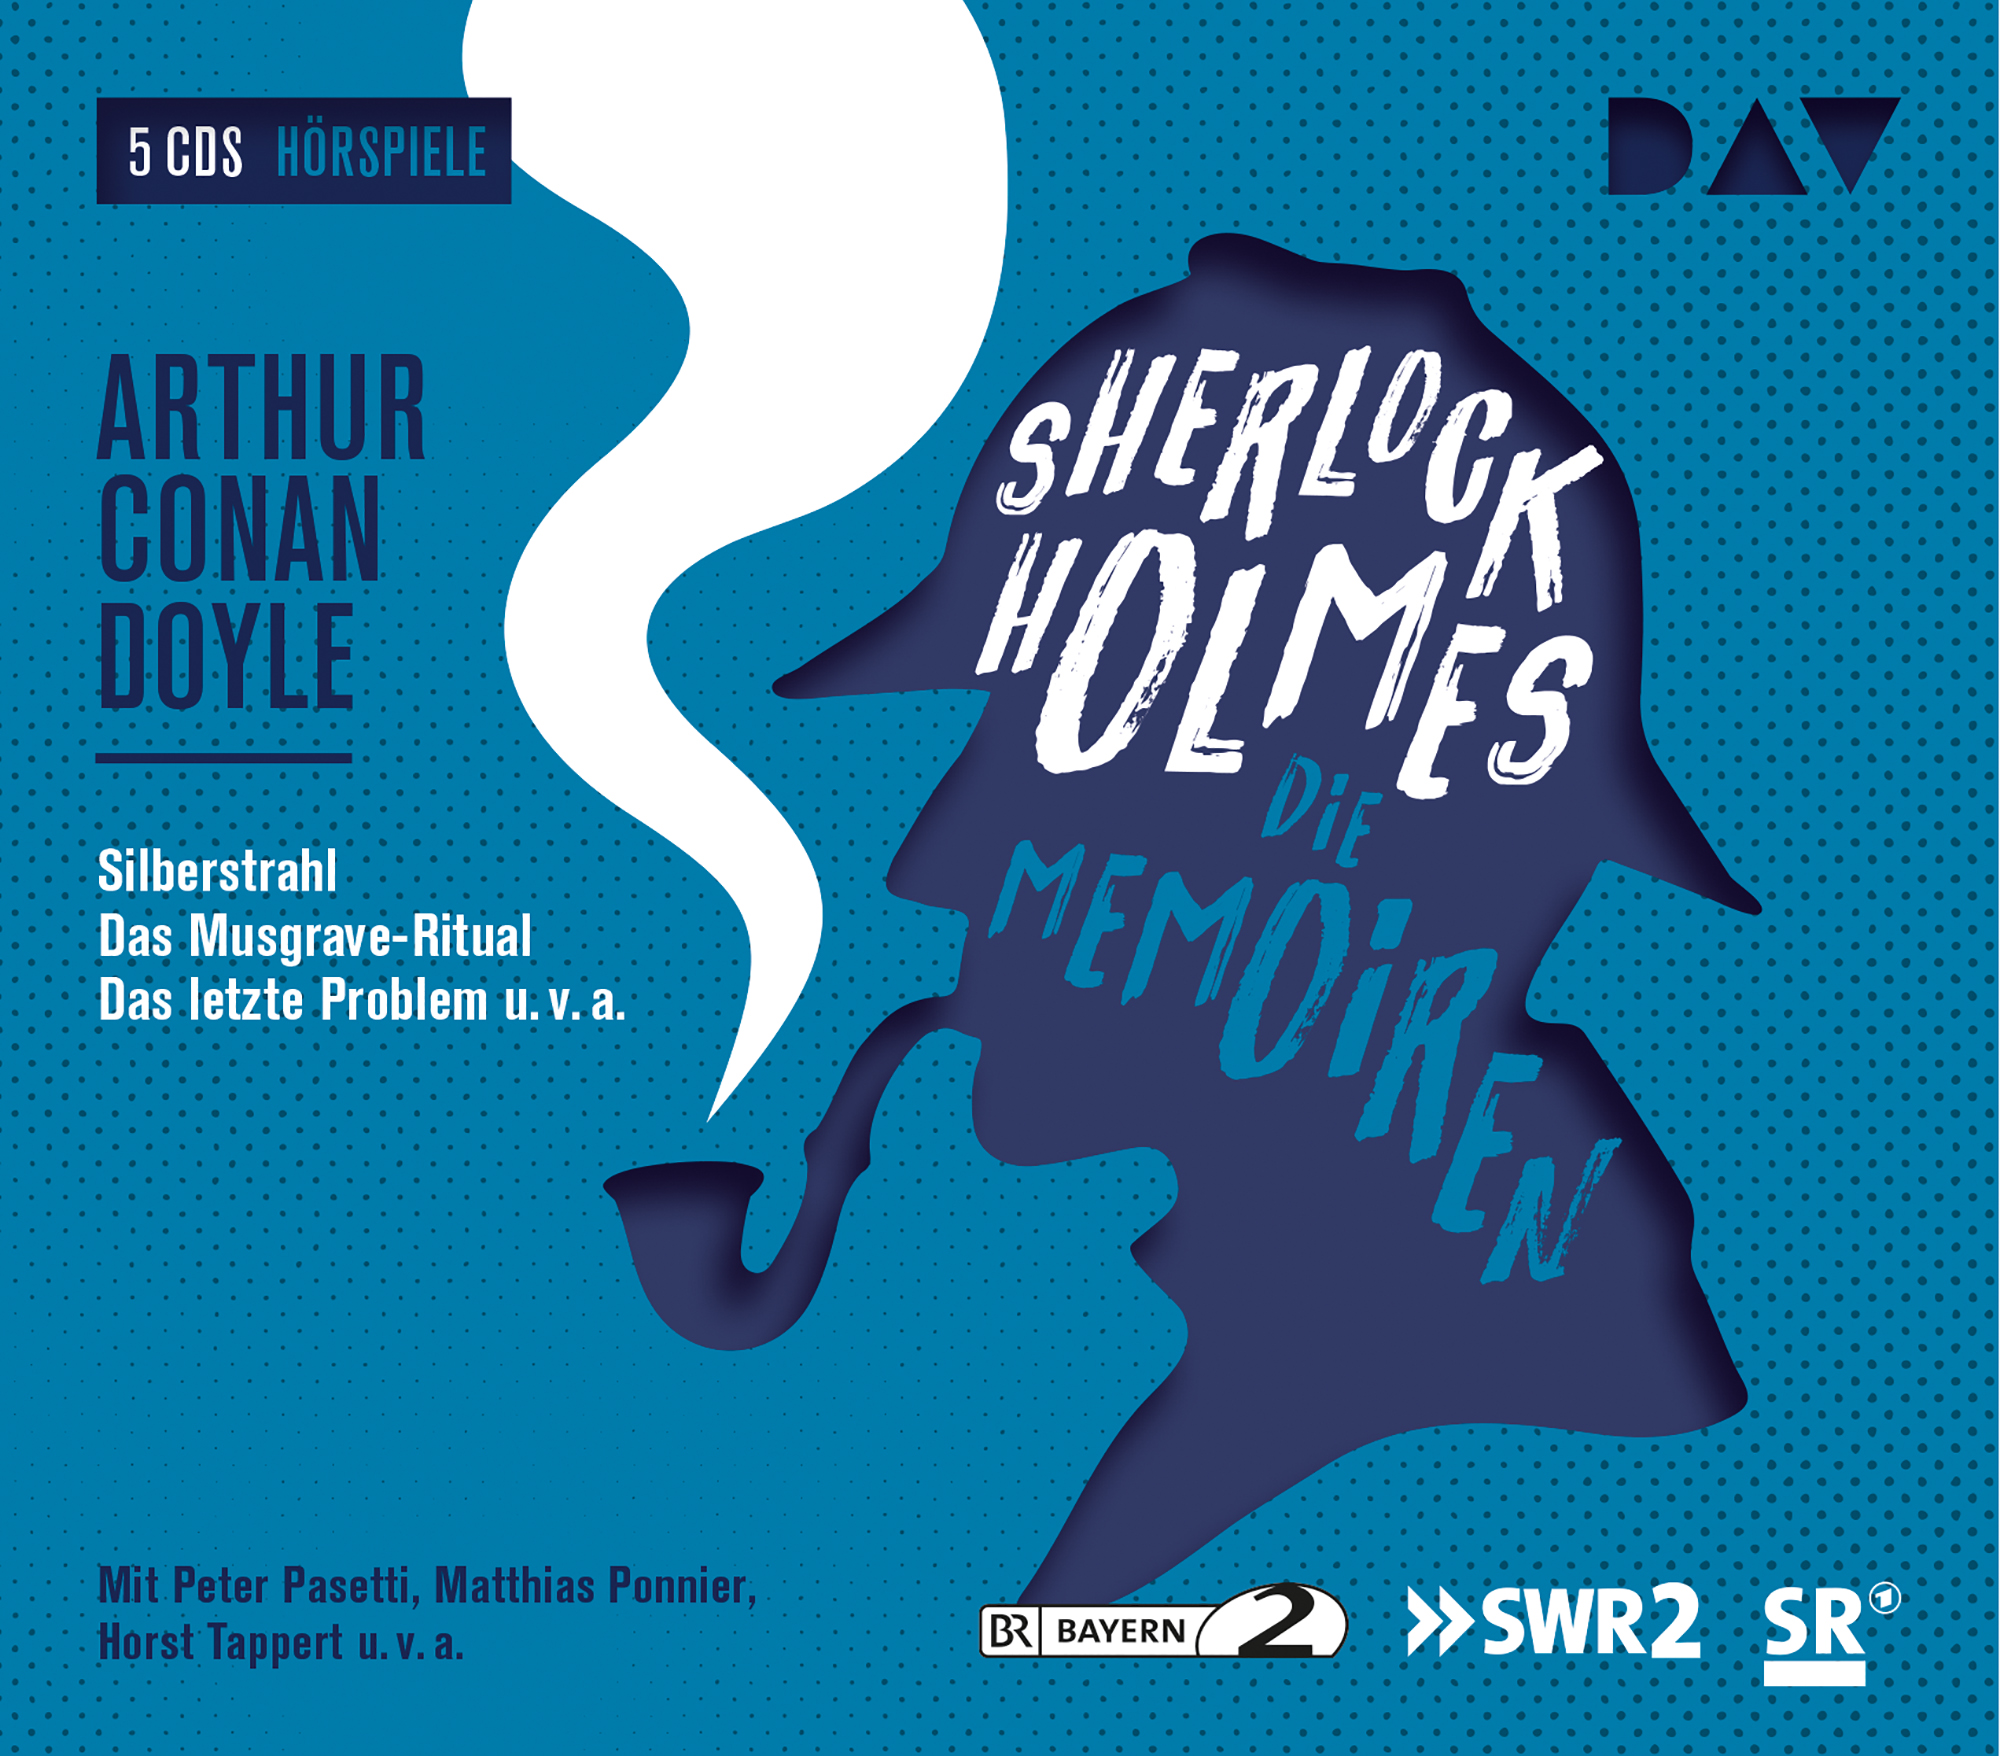 Doyle - Arthur Memoiren Holmes C. 3-Die - (CD) Sherlock